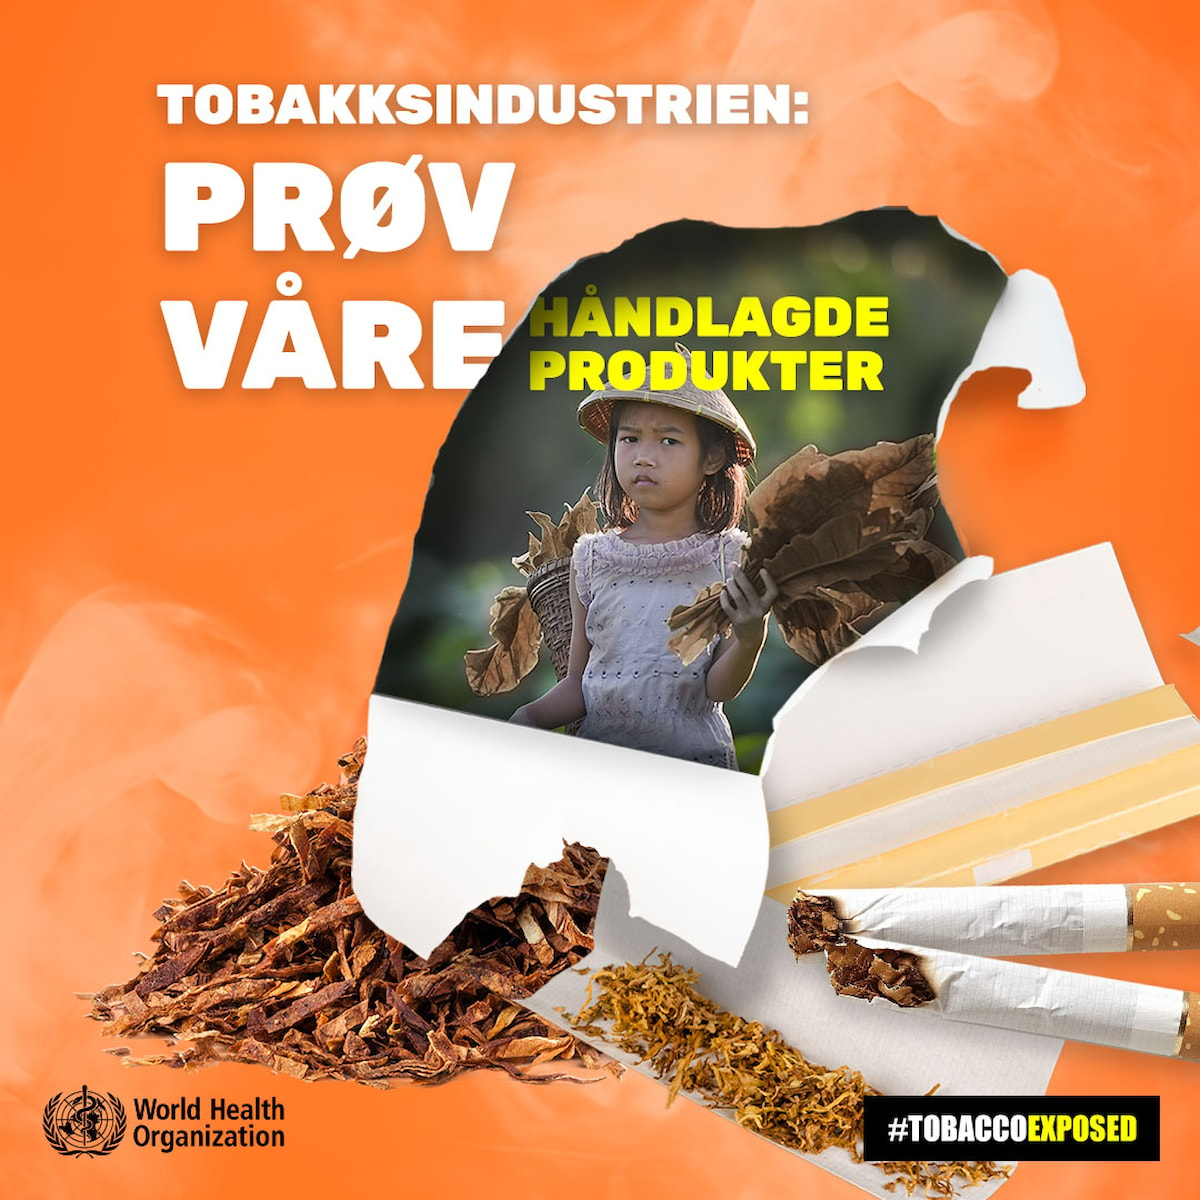 Tobakksindustrien: Prøv våre håndlagde produkter (WHO)